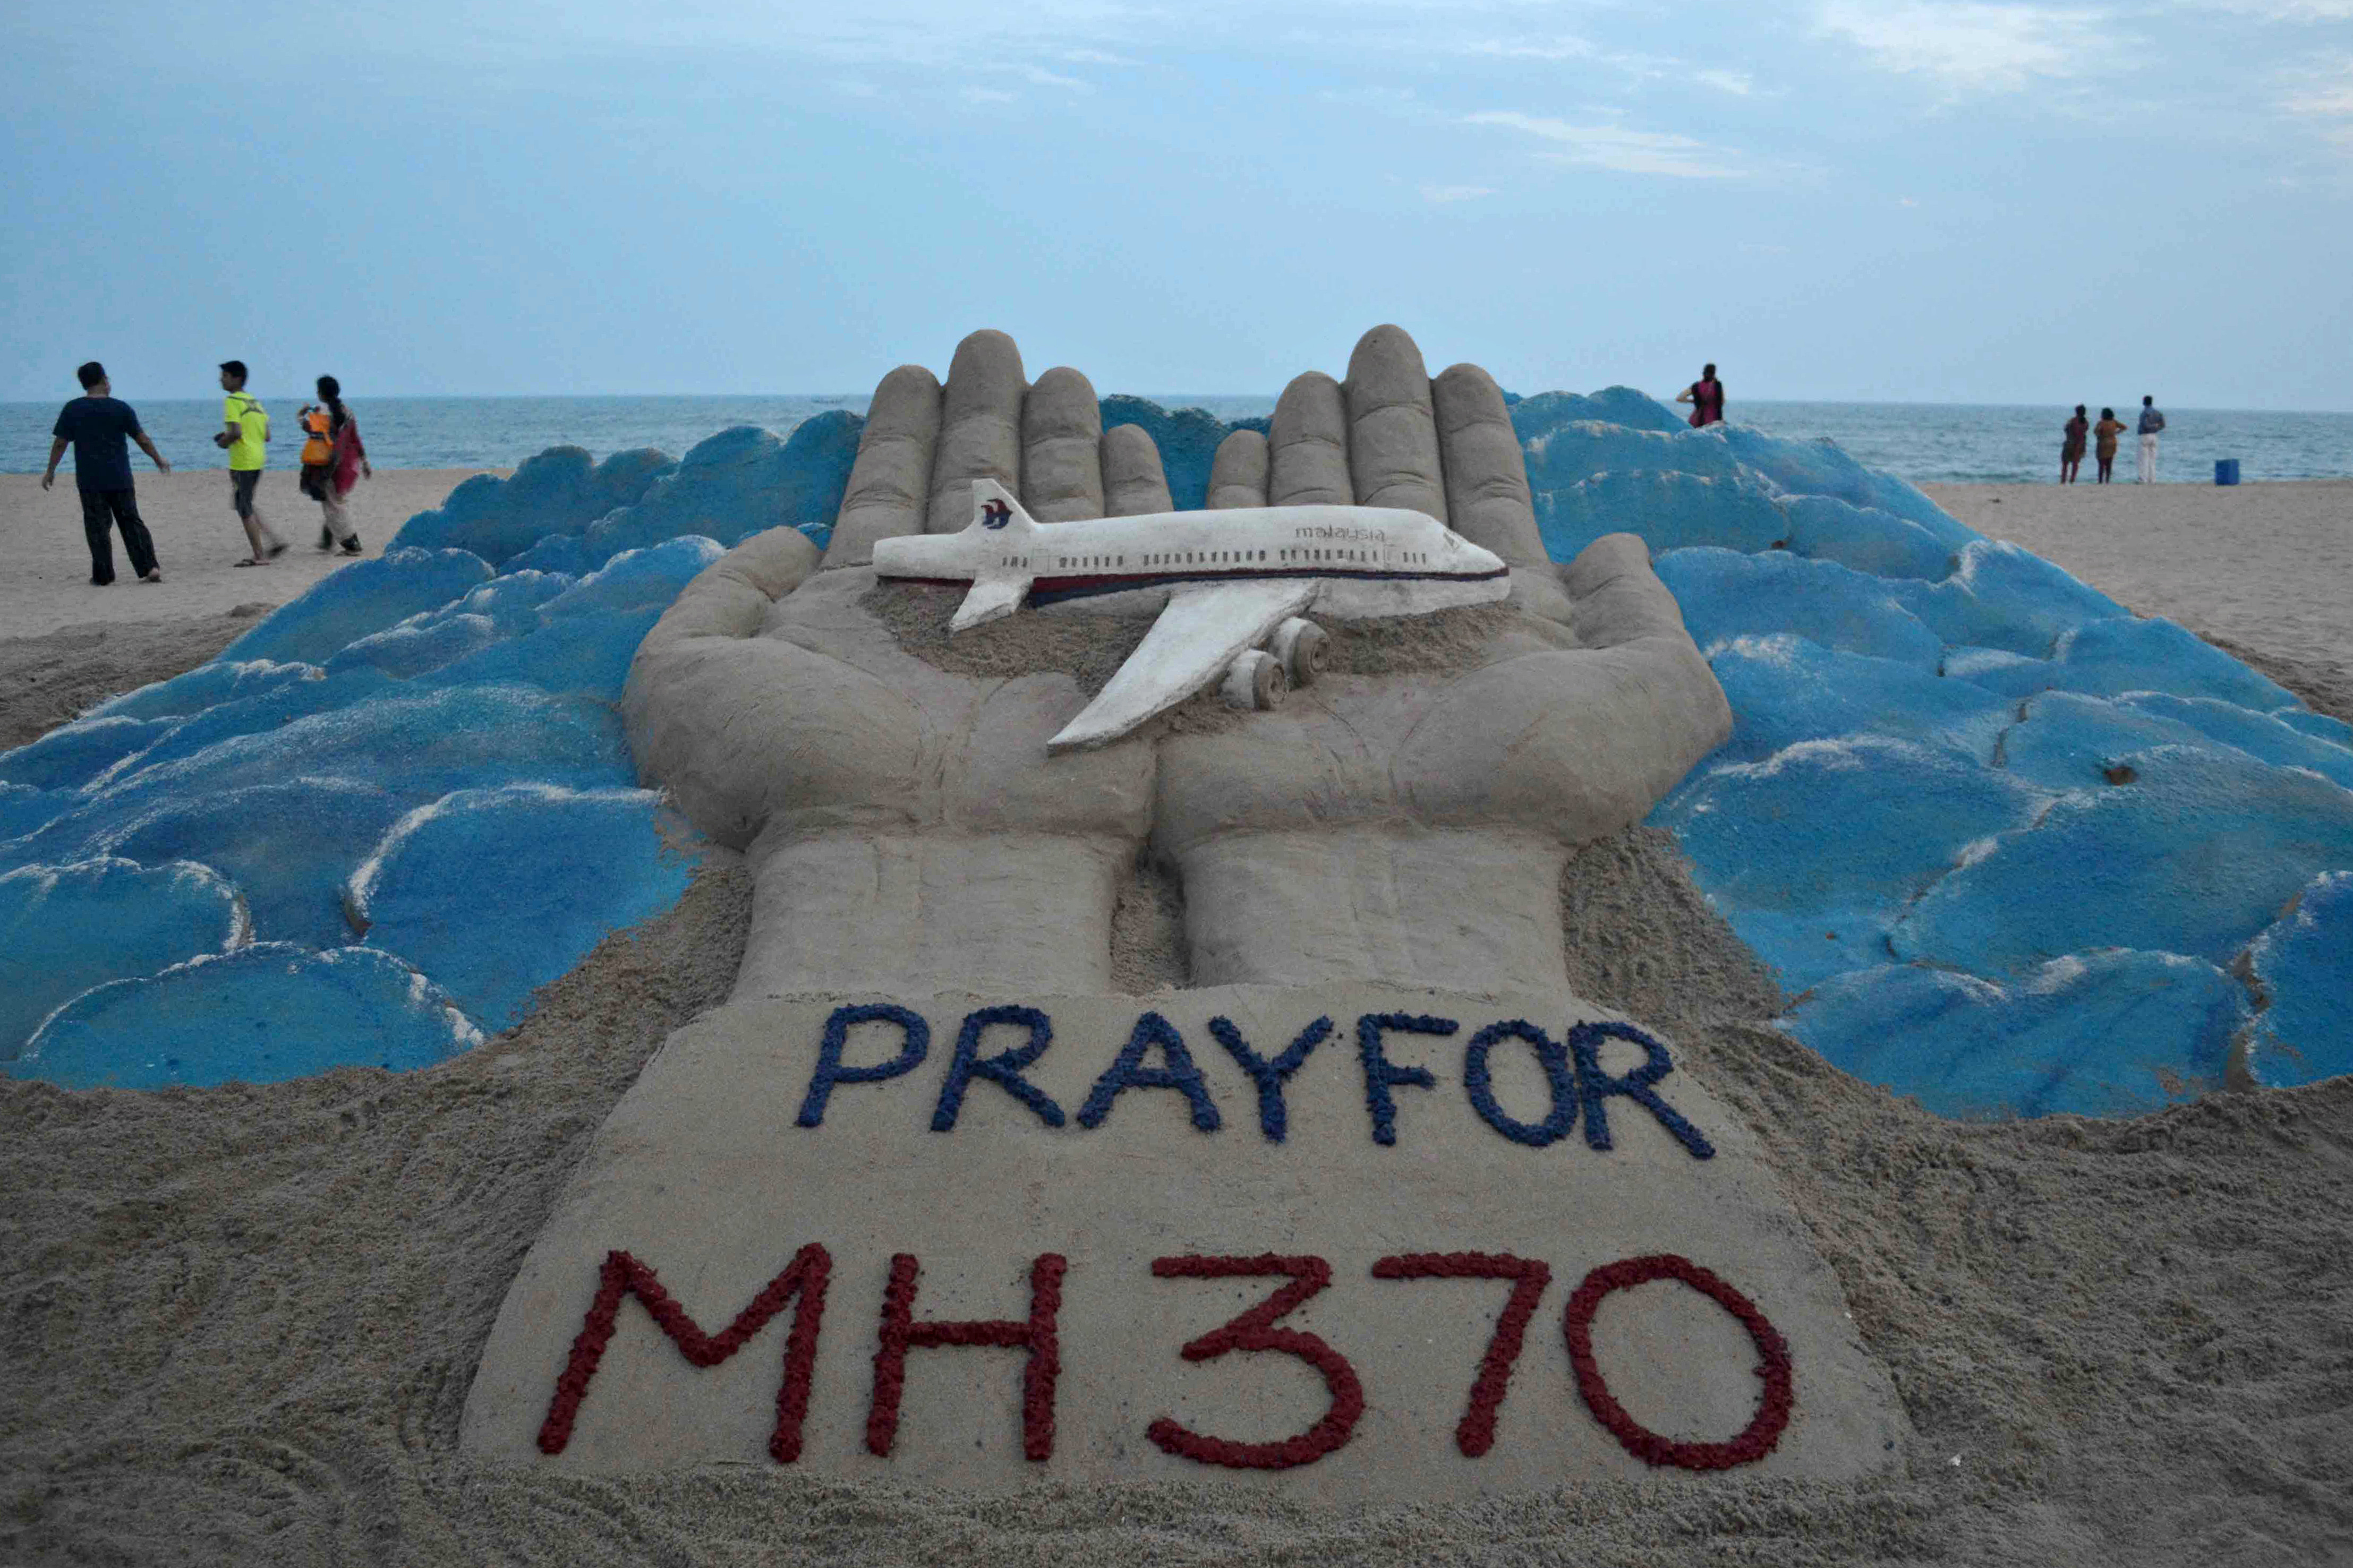  Encuentran en Mozambique restos de avión que podrían ser de MH370